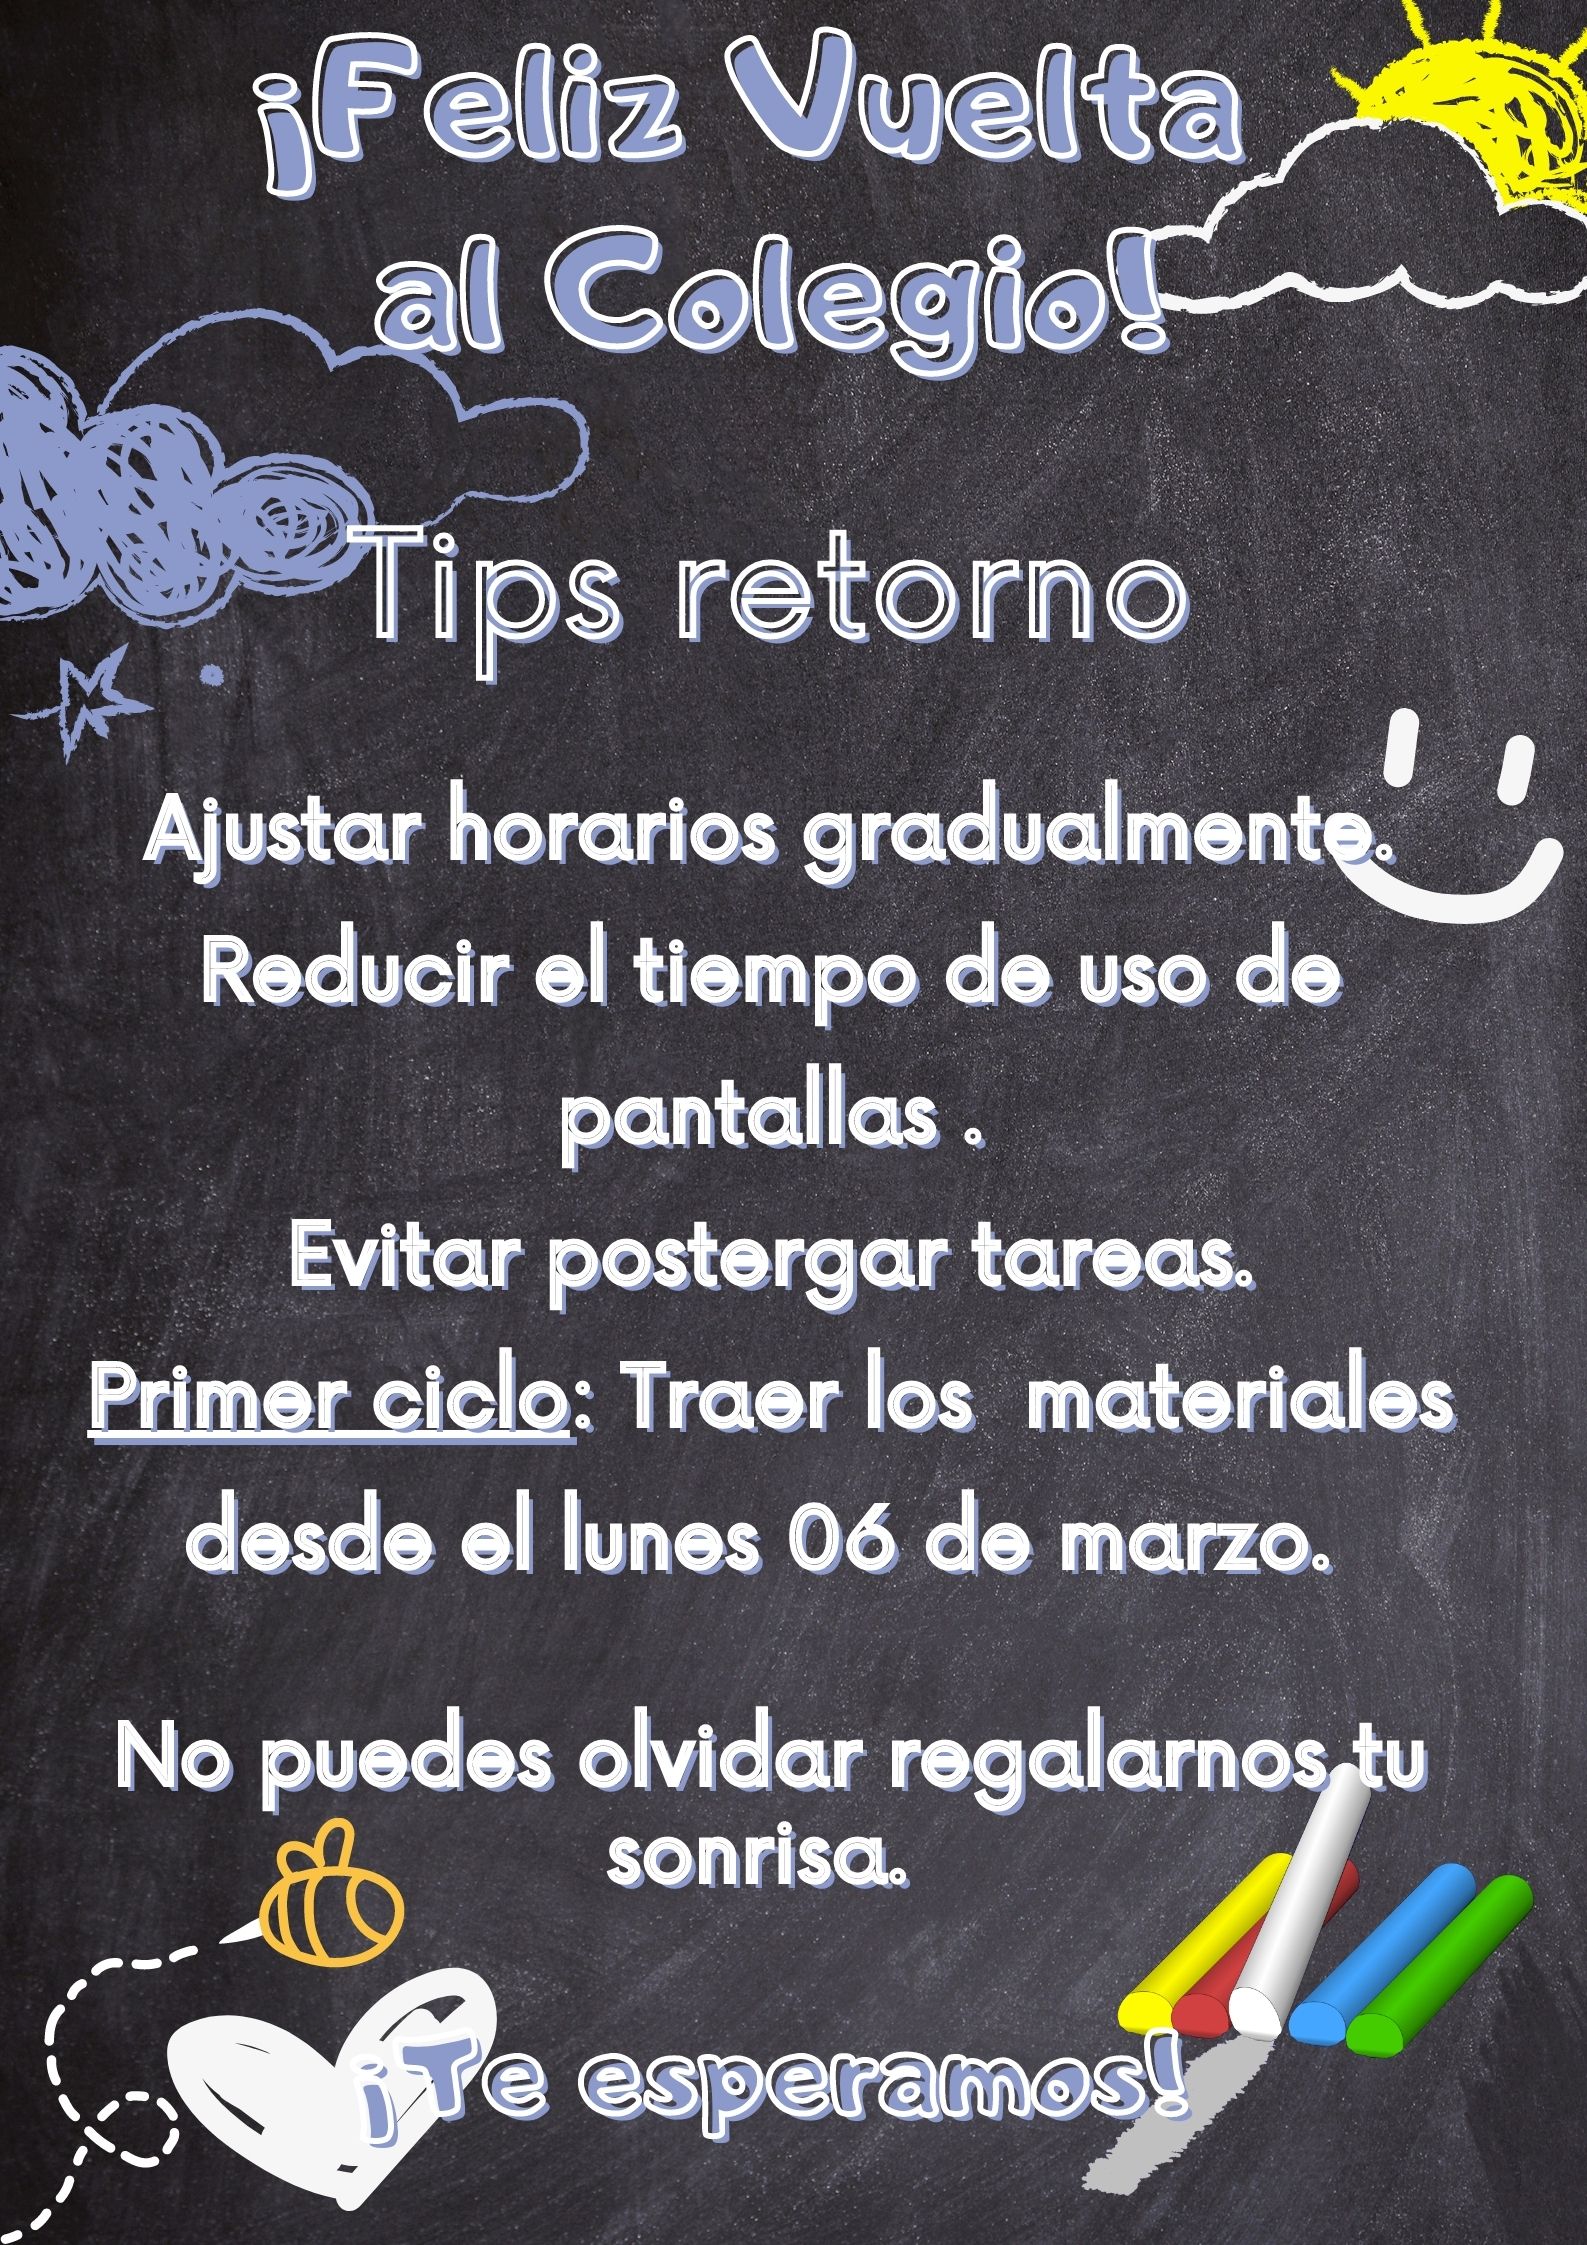 Poster_Vuelta_al_Colegio_Dibujos_Pizarra_Negro_y_Verde.jpg